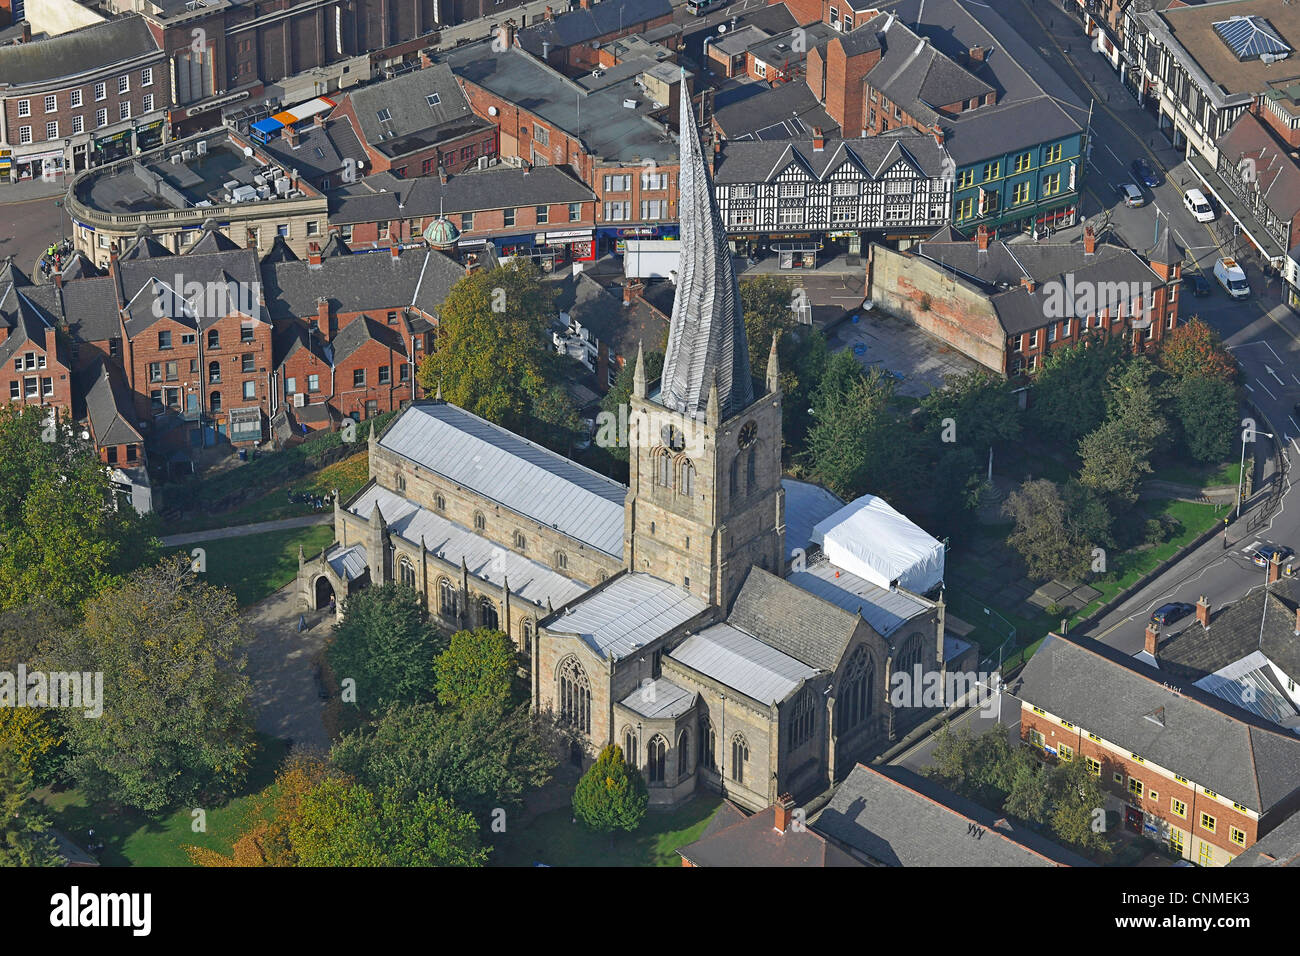 Fotografía aérea que muestra la Iglesia de Santa María y todos los santos en Chesterfield, con su campanario helicoidal. Foto de stock